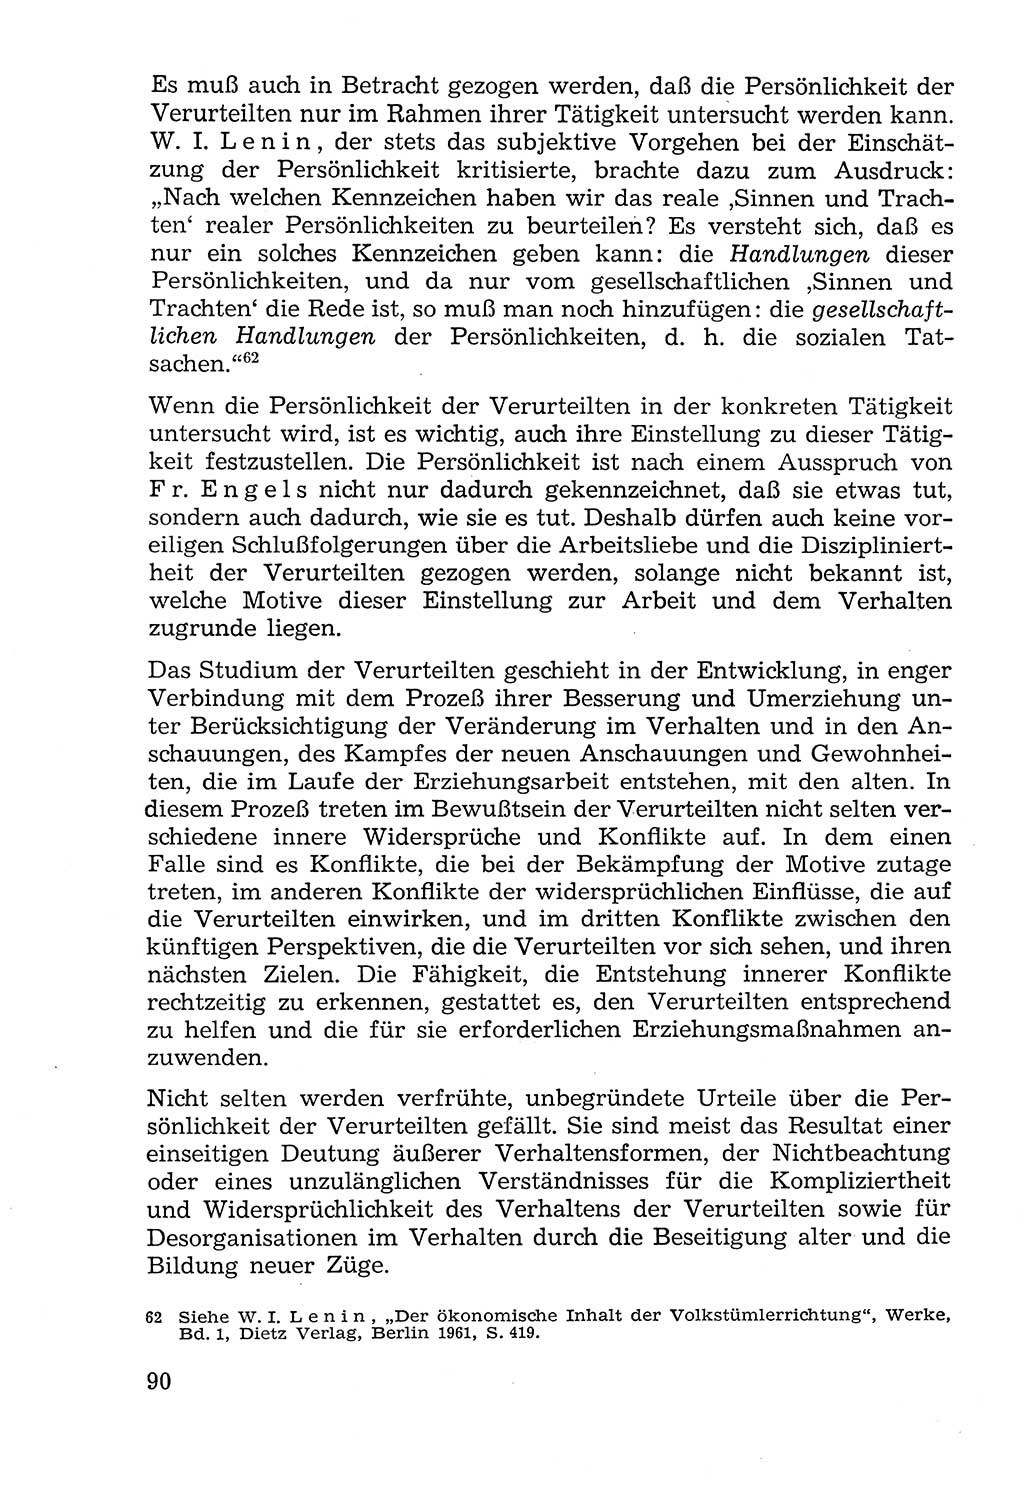 Lehrbuch der Strafvollzugspädagogik [Deutsche Demokratische Republik (DDR)] 1969, Seite 90 (Lb. SV-Pd. DDR 1969, S. 90)